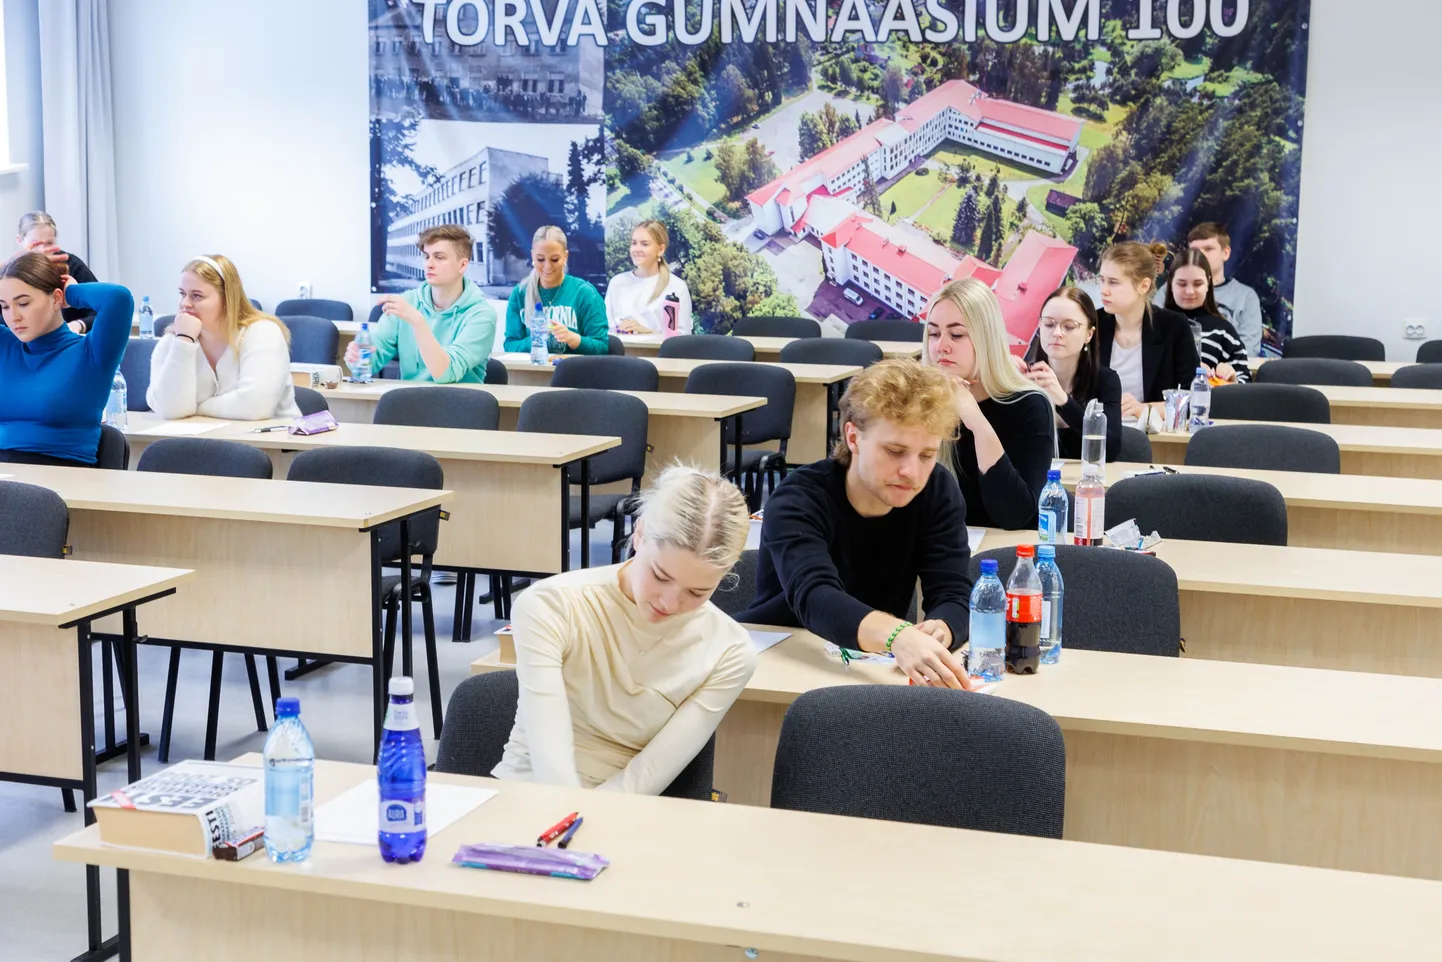 Abituriendid Tõrva gümnaasiumis eesti keele riigieksamil. Foto on loo juures illustreeriv.